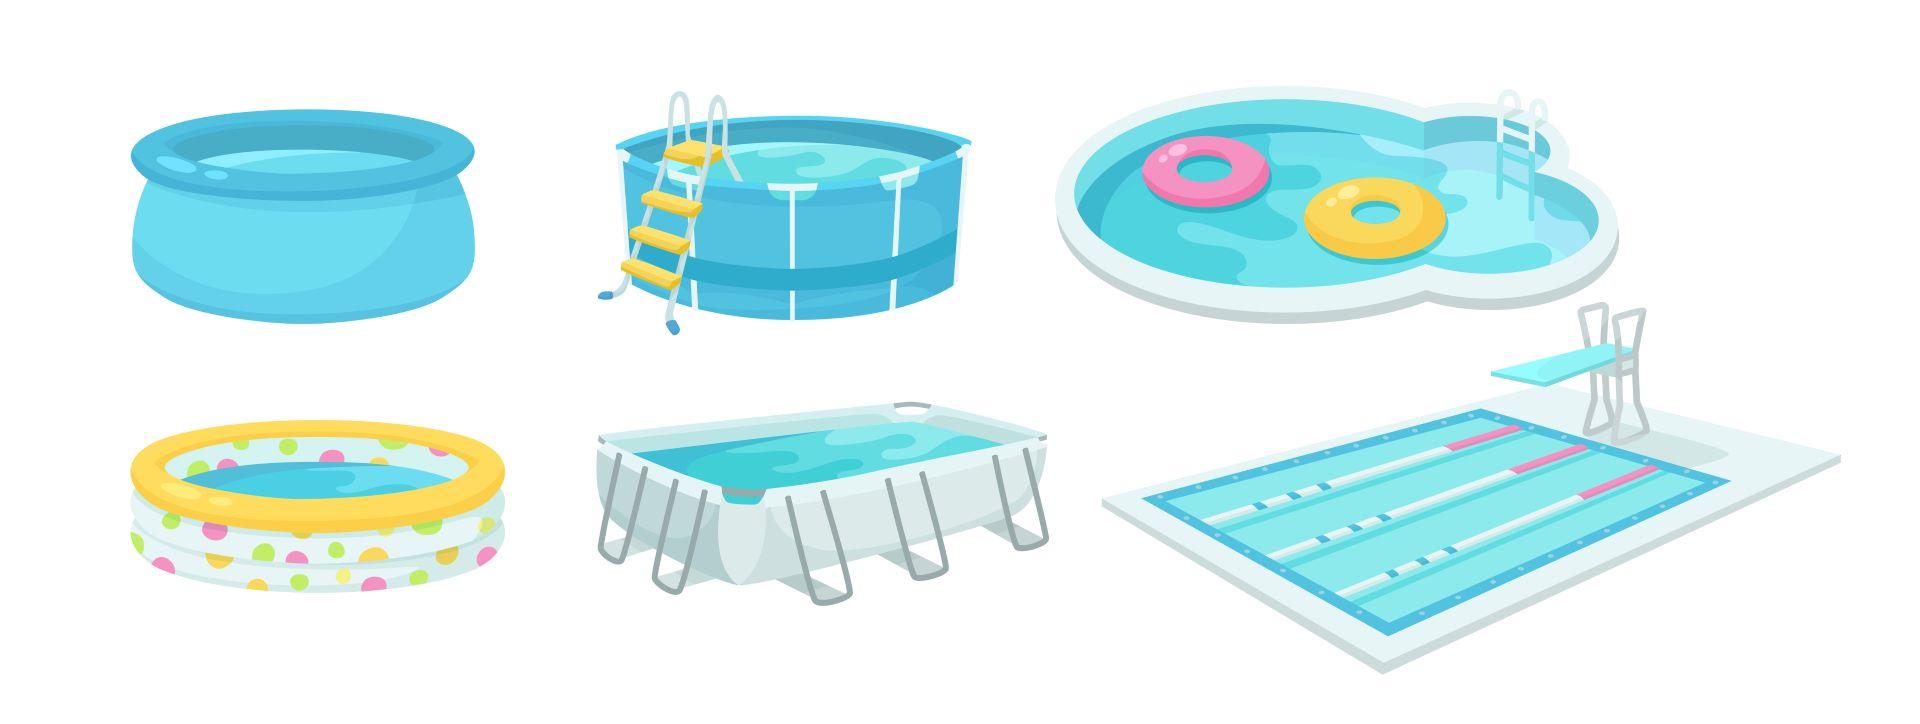 Schwimmbäder Cartoon Illustration Sammlung. Verschiedene Arten von aufblasbaren und Outdoor-Pools für draußen Sommer Aktivität.